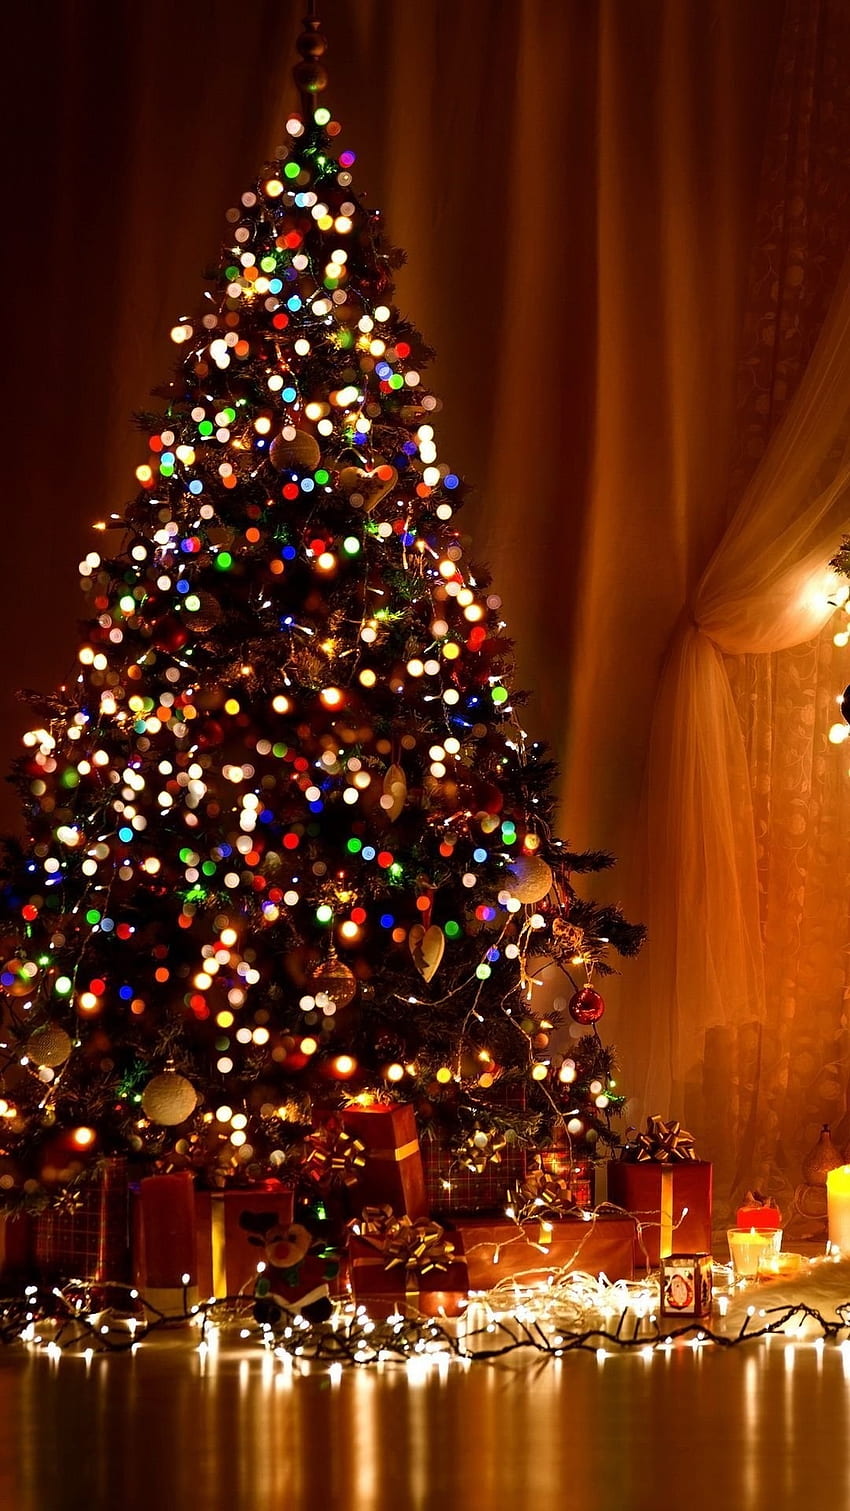 Mau chóng nhìn vào hình ảnh các quả cầu Giáng Sinh tuyệt đẹp. Hãy tưởng tượng một món quà Giáng Sinh xuất sắc trong tay bạn, tràn đầy yêu thương và niềm vui. Hãy tận hưởng những giây phút này và mở rộng lòng yêu thương của mình!